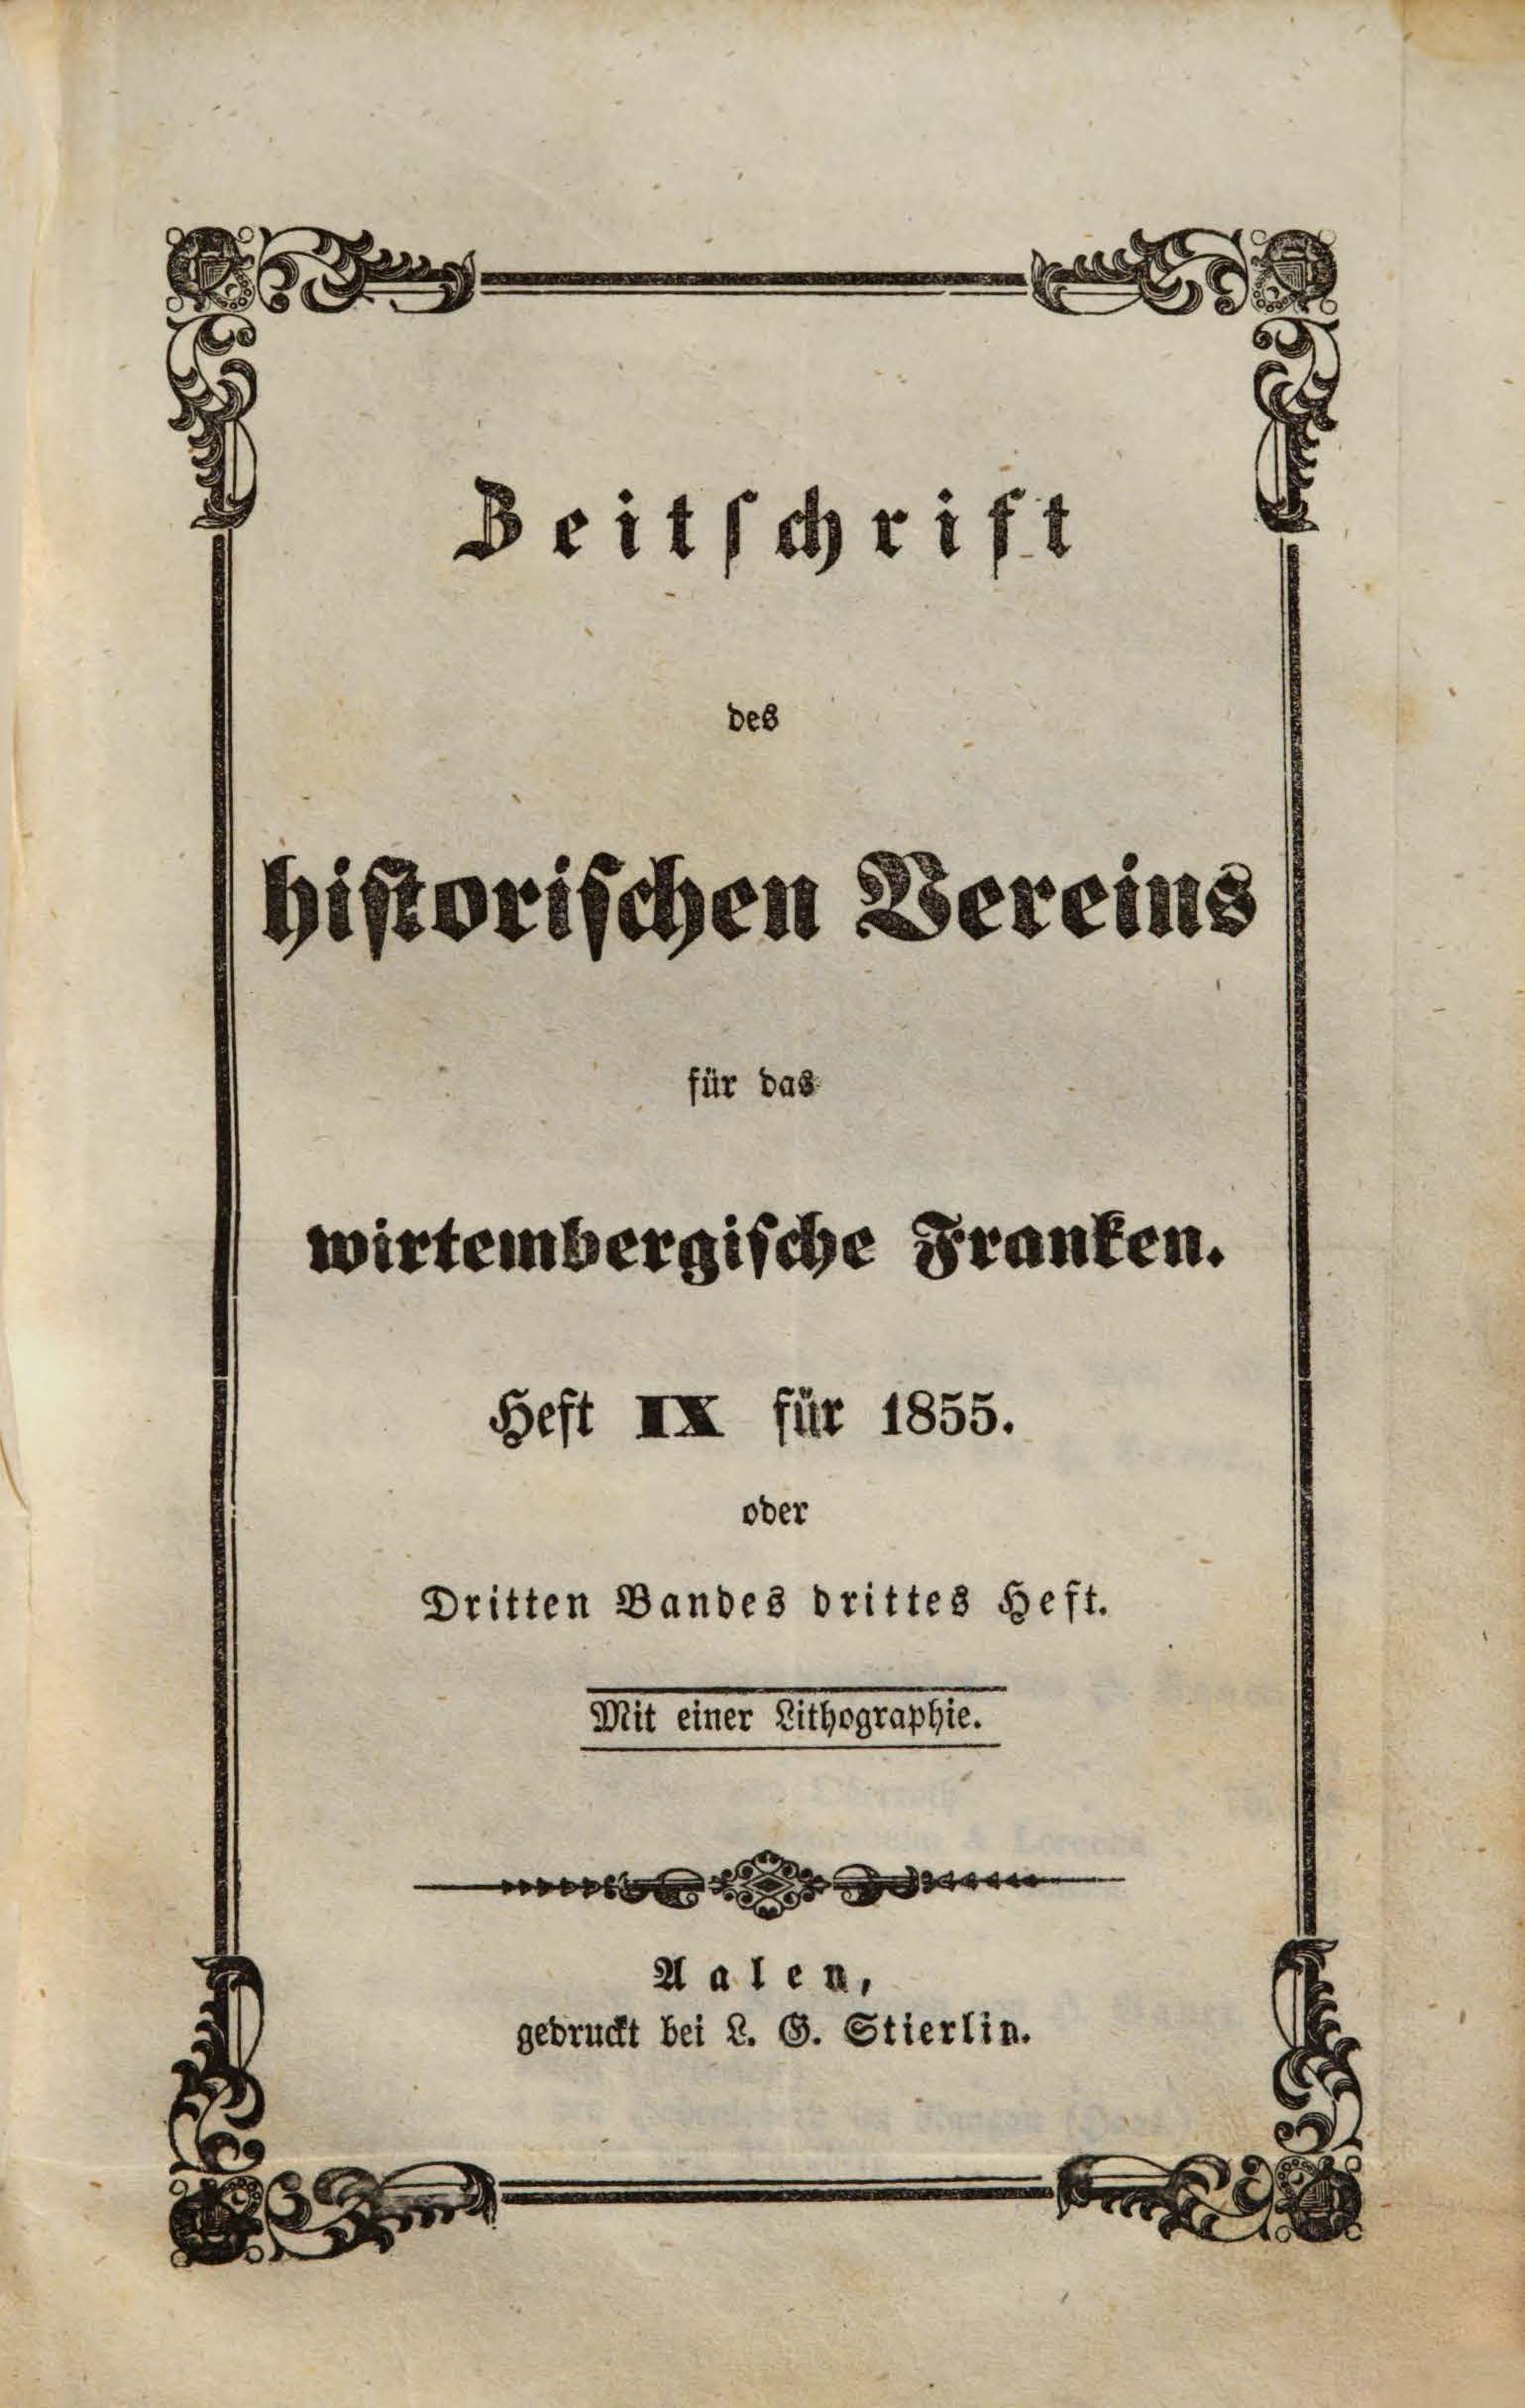                     Ansehen Bd. 3 Nr. 3 (1855): Zeitschrift des Historischen Vereins für das Württembergische Franken
                